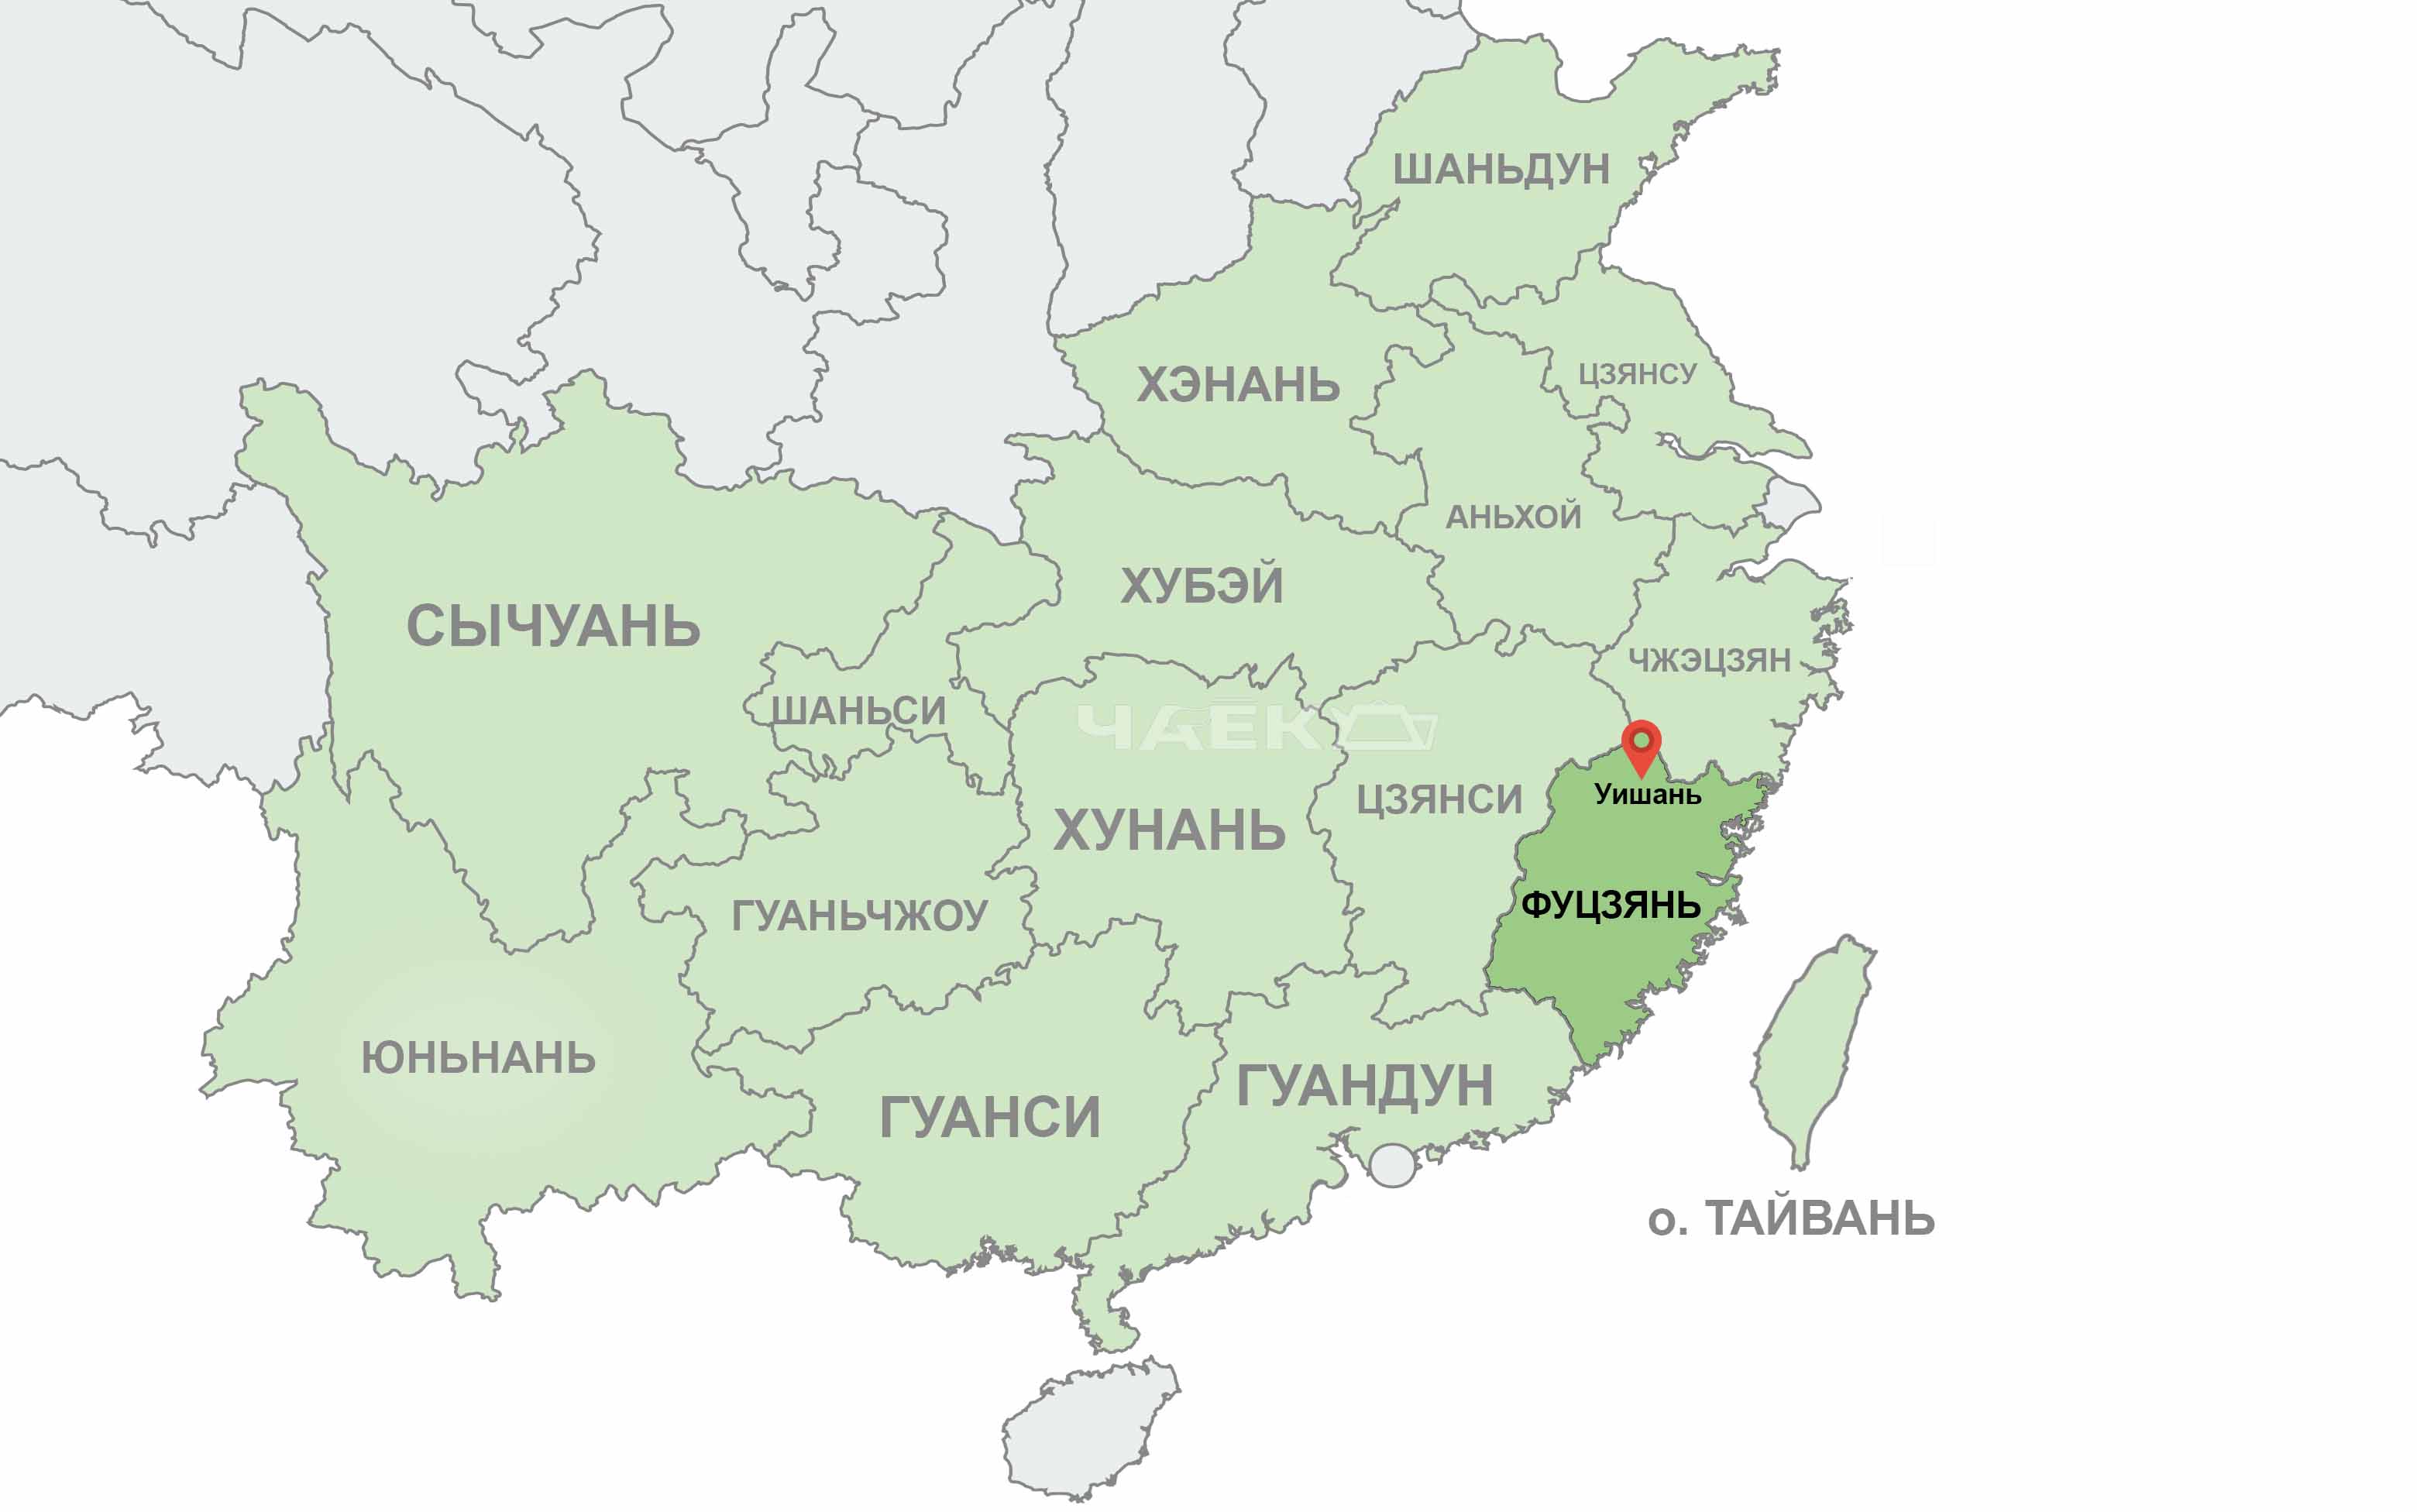 Зелёным выделены все чаепроизводящие провинции Китая. Серым - остальной Китай. А под красным указателем - природная колыбель тёмных улунов провинции Фуцзянь.